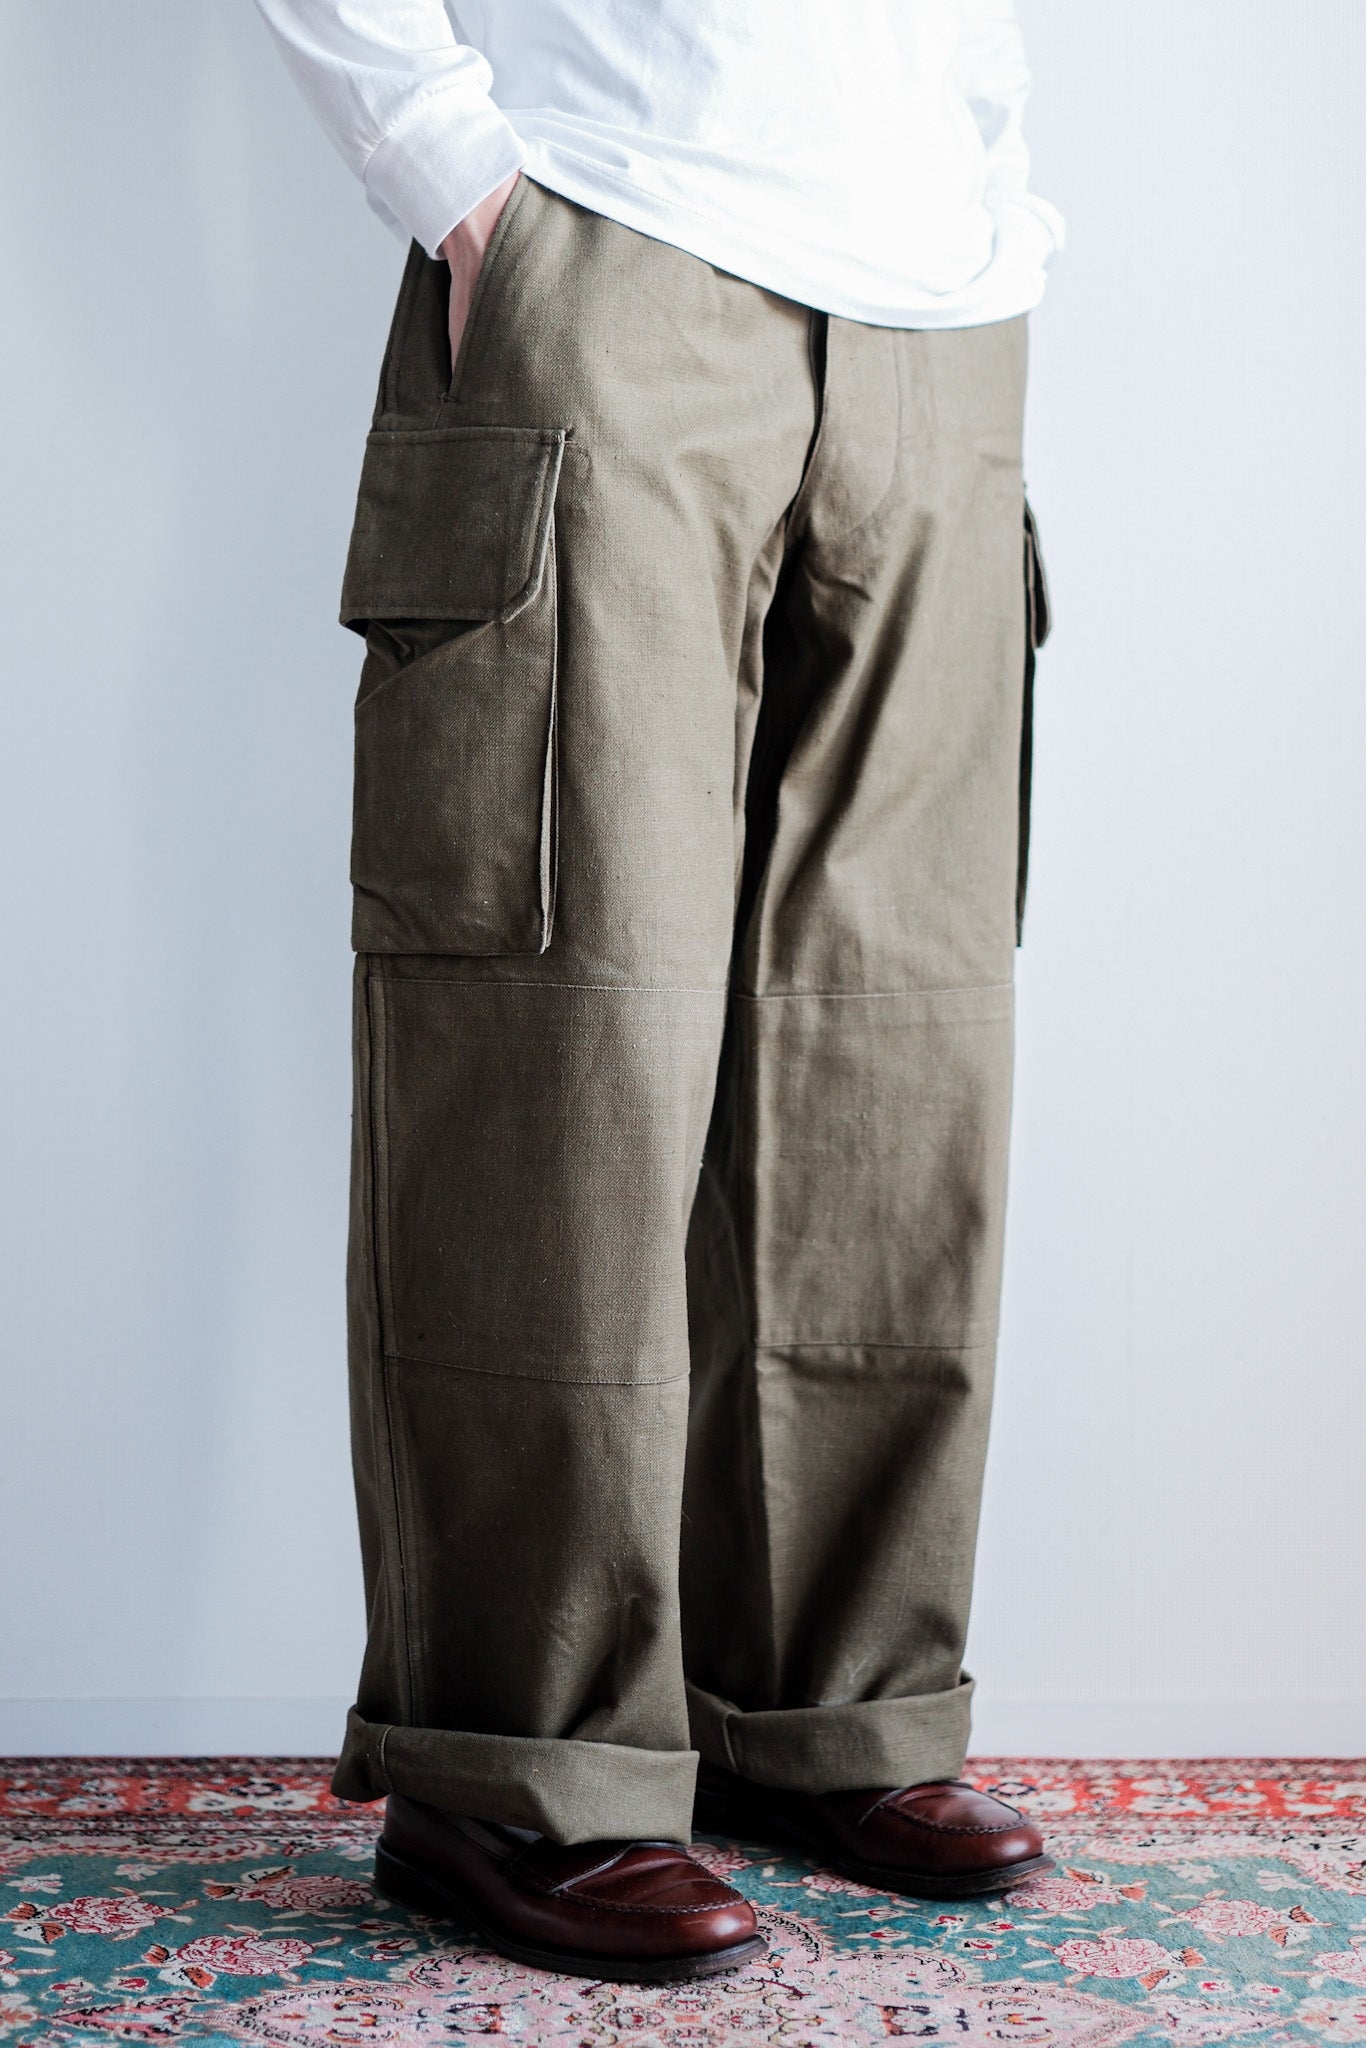 [〜40年代]法國陸軍M47野外褲子的大小。84m“第一類”“死股”